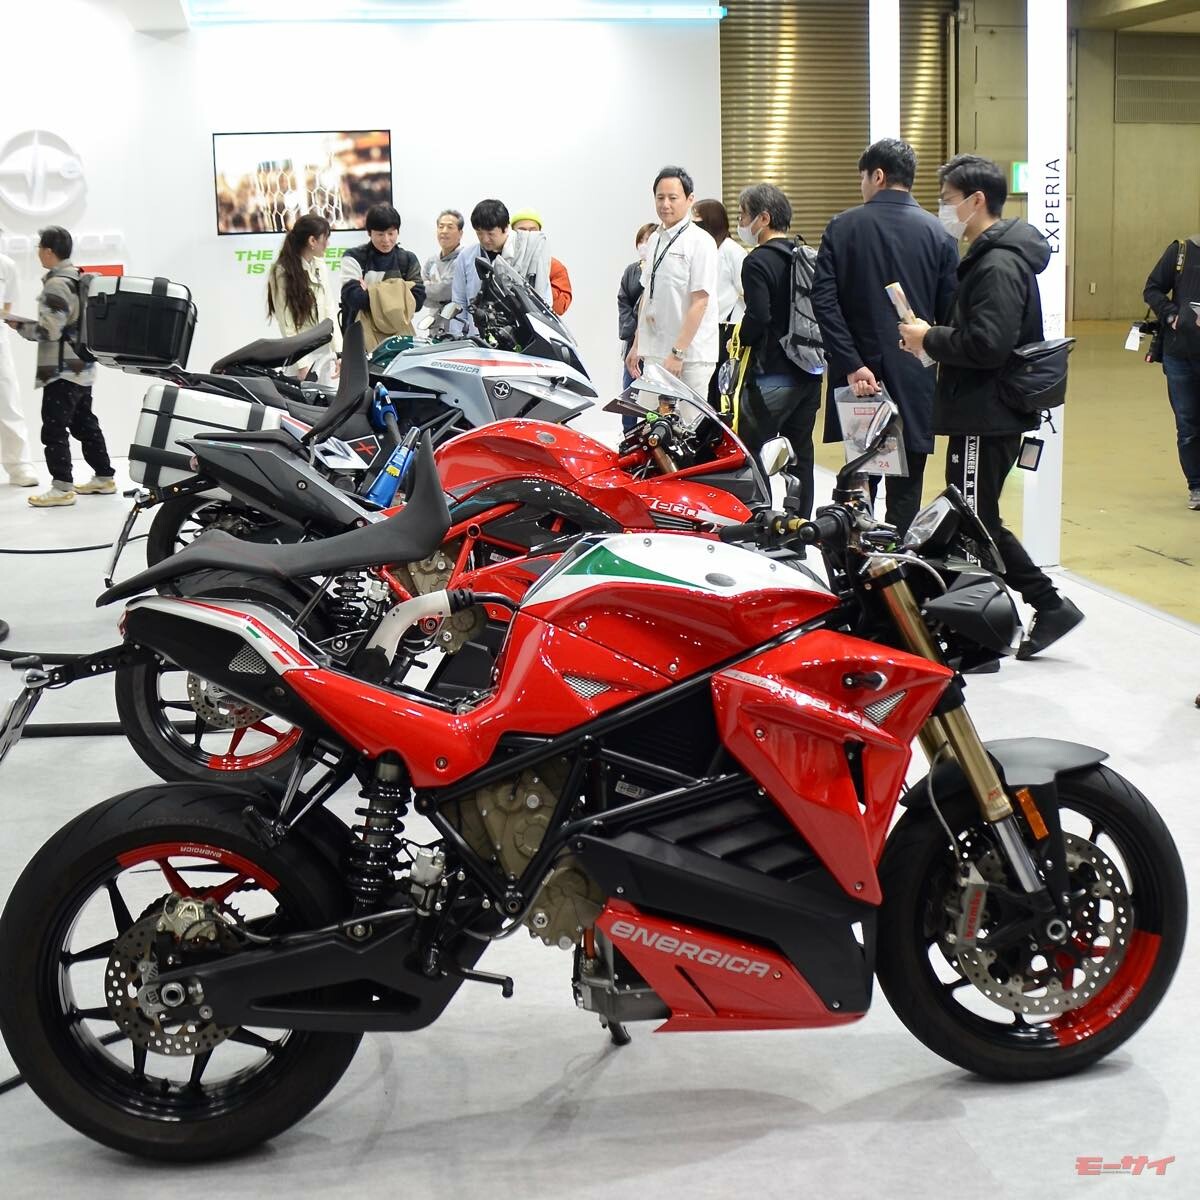 高性能電動バイク「エネルジカ」は、軽二輪＝250ccクラスなのに大型自動二輪免許が必要!?